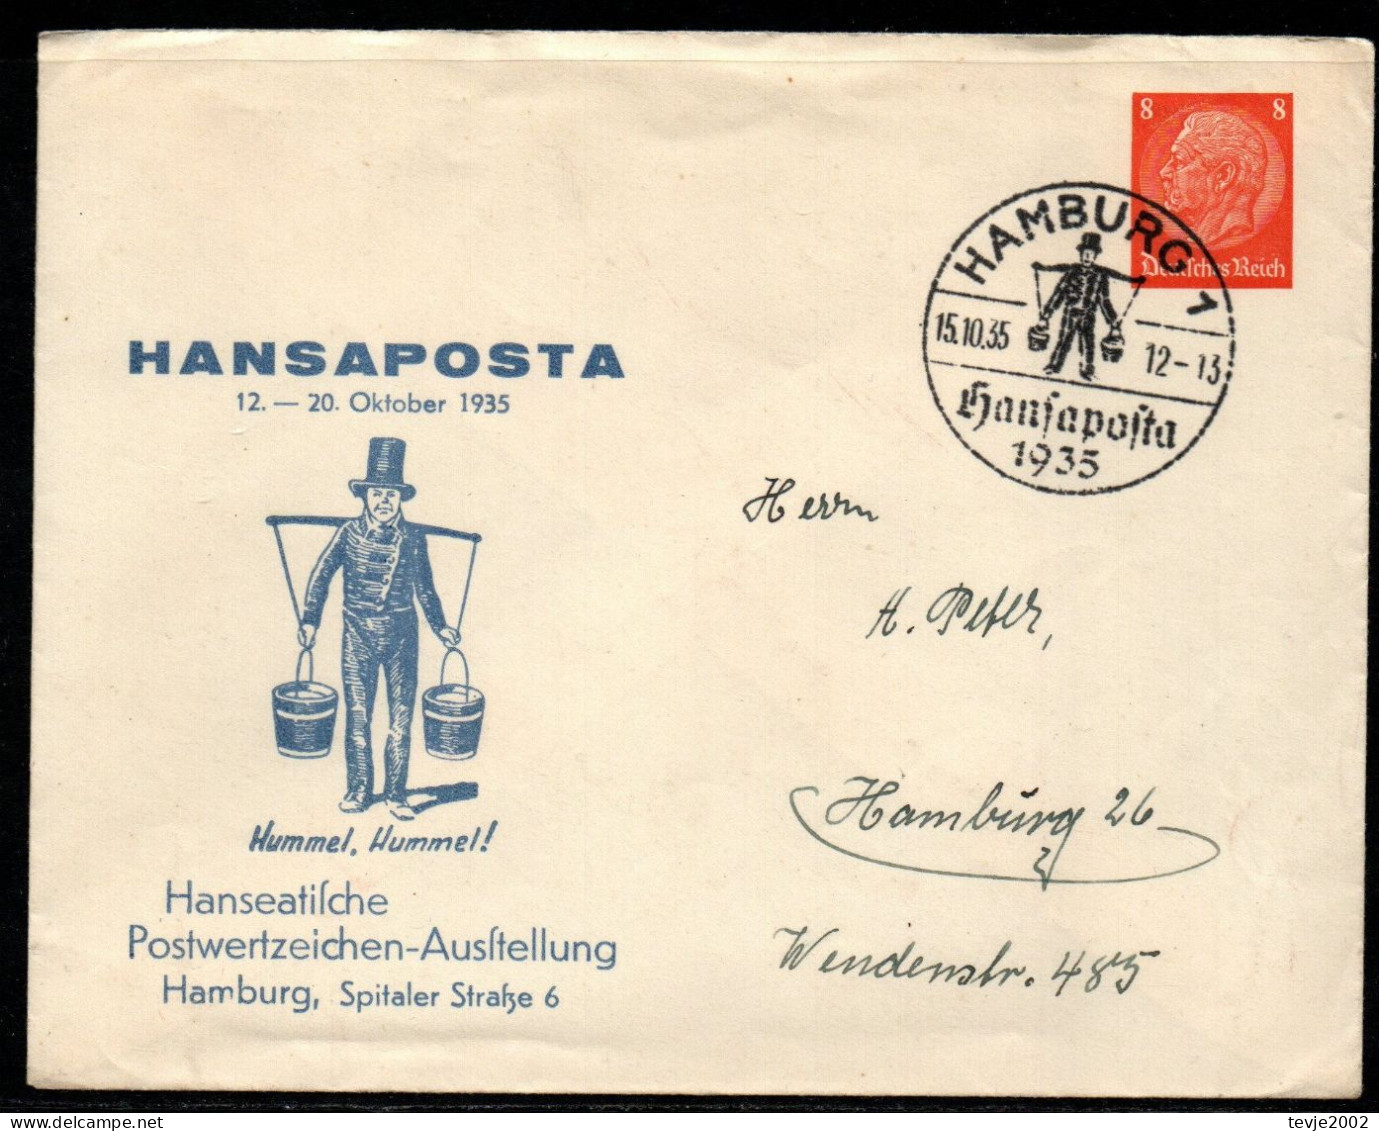 Deutsches Reich - Privatganzsache Hindenburg - Sonderstempel HANSAPOSTA Hamburg 1935 - Private Postal Stationery